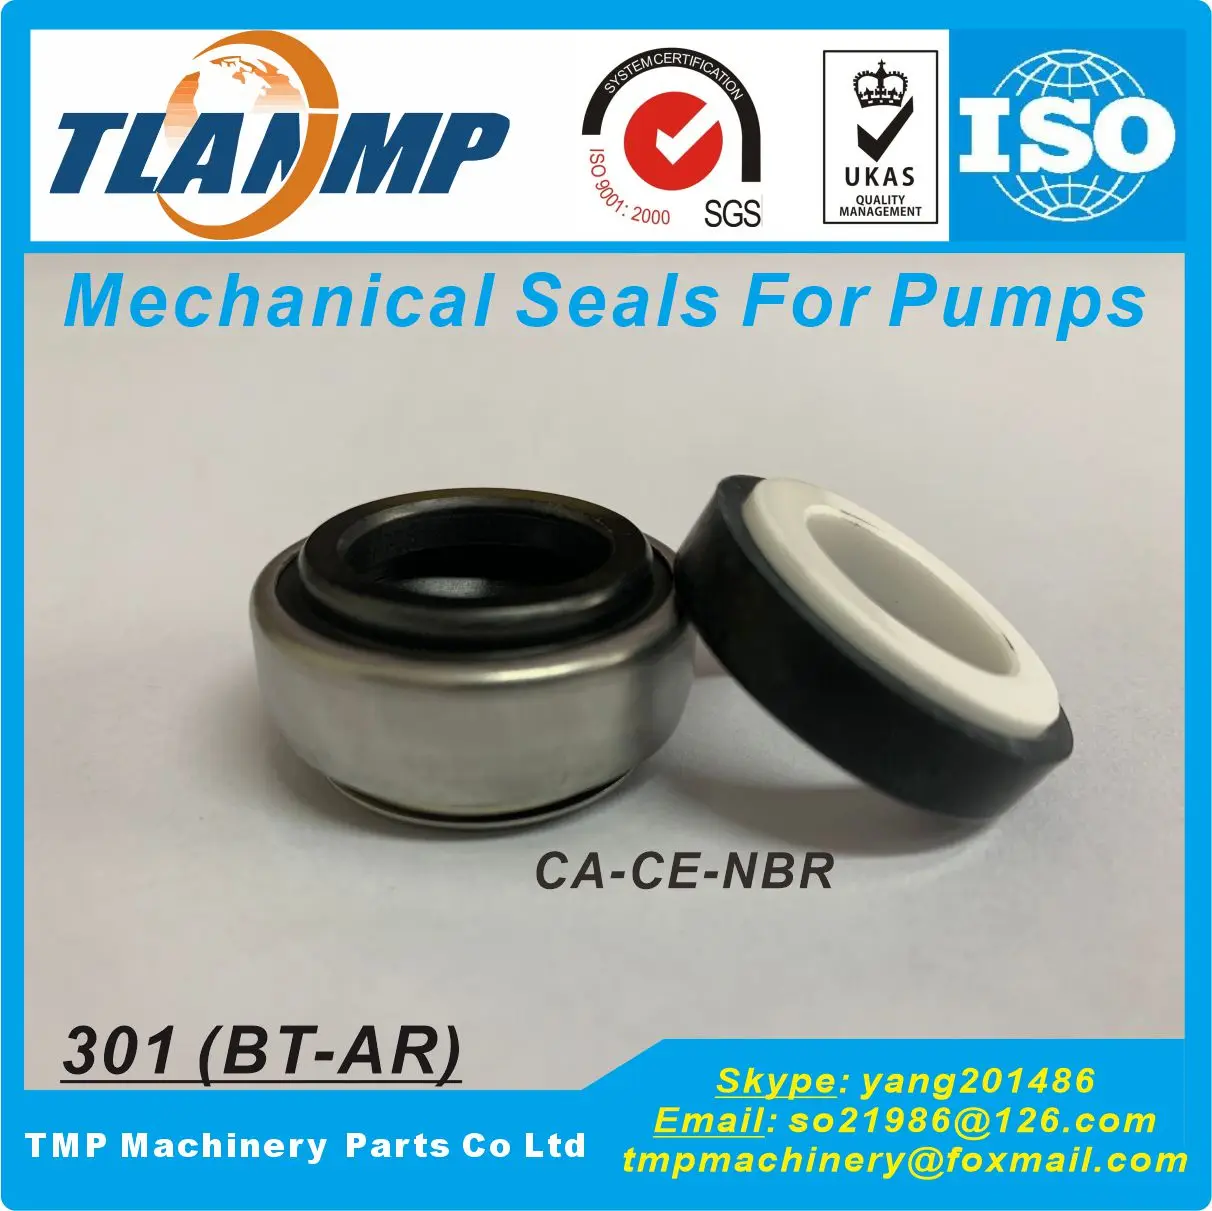 

301-25L (BT-AR-25L) , 301-25 L , Rubber Bellow TLANMP Mechanical Seals (d3=47mm, d7=50mm)|Equivalent to BT-AR Seals